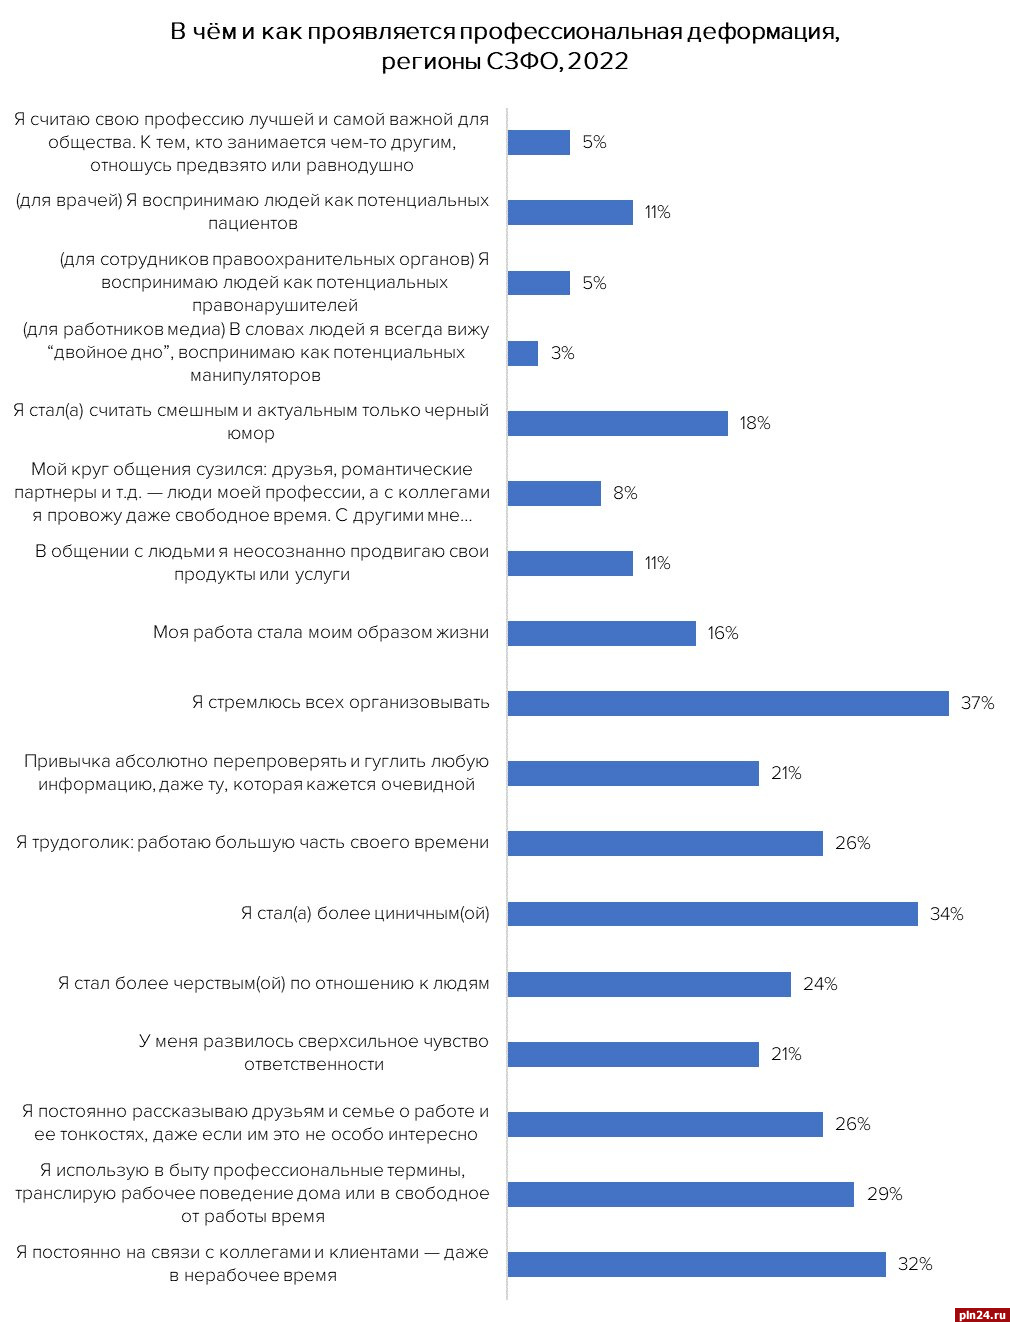 Жители СЗФО больше других россиян подвержены профдеформации – опрос